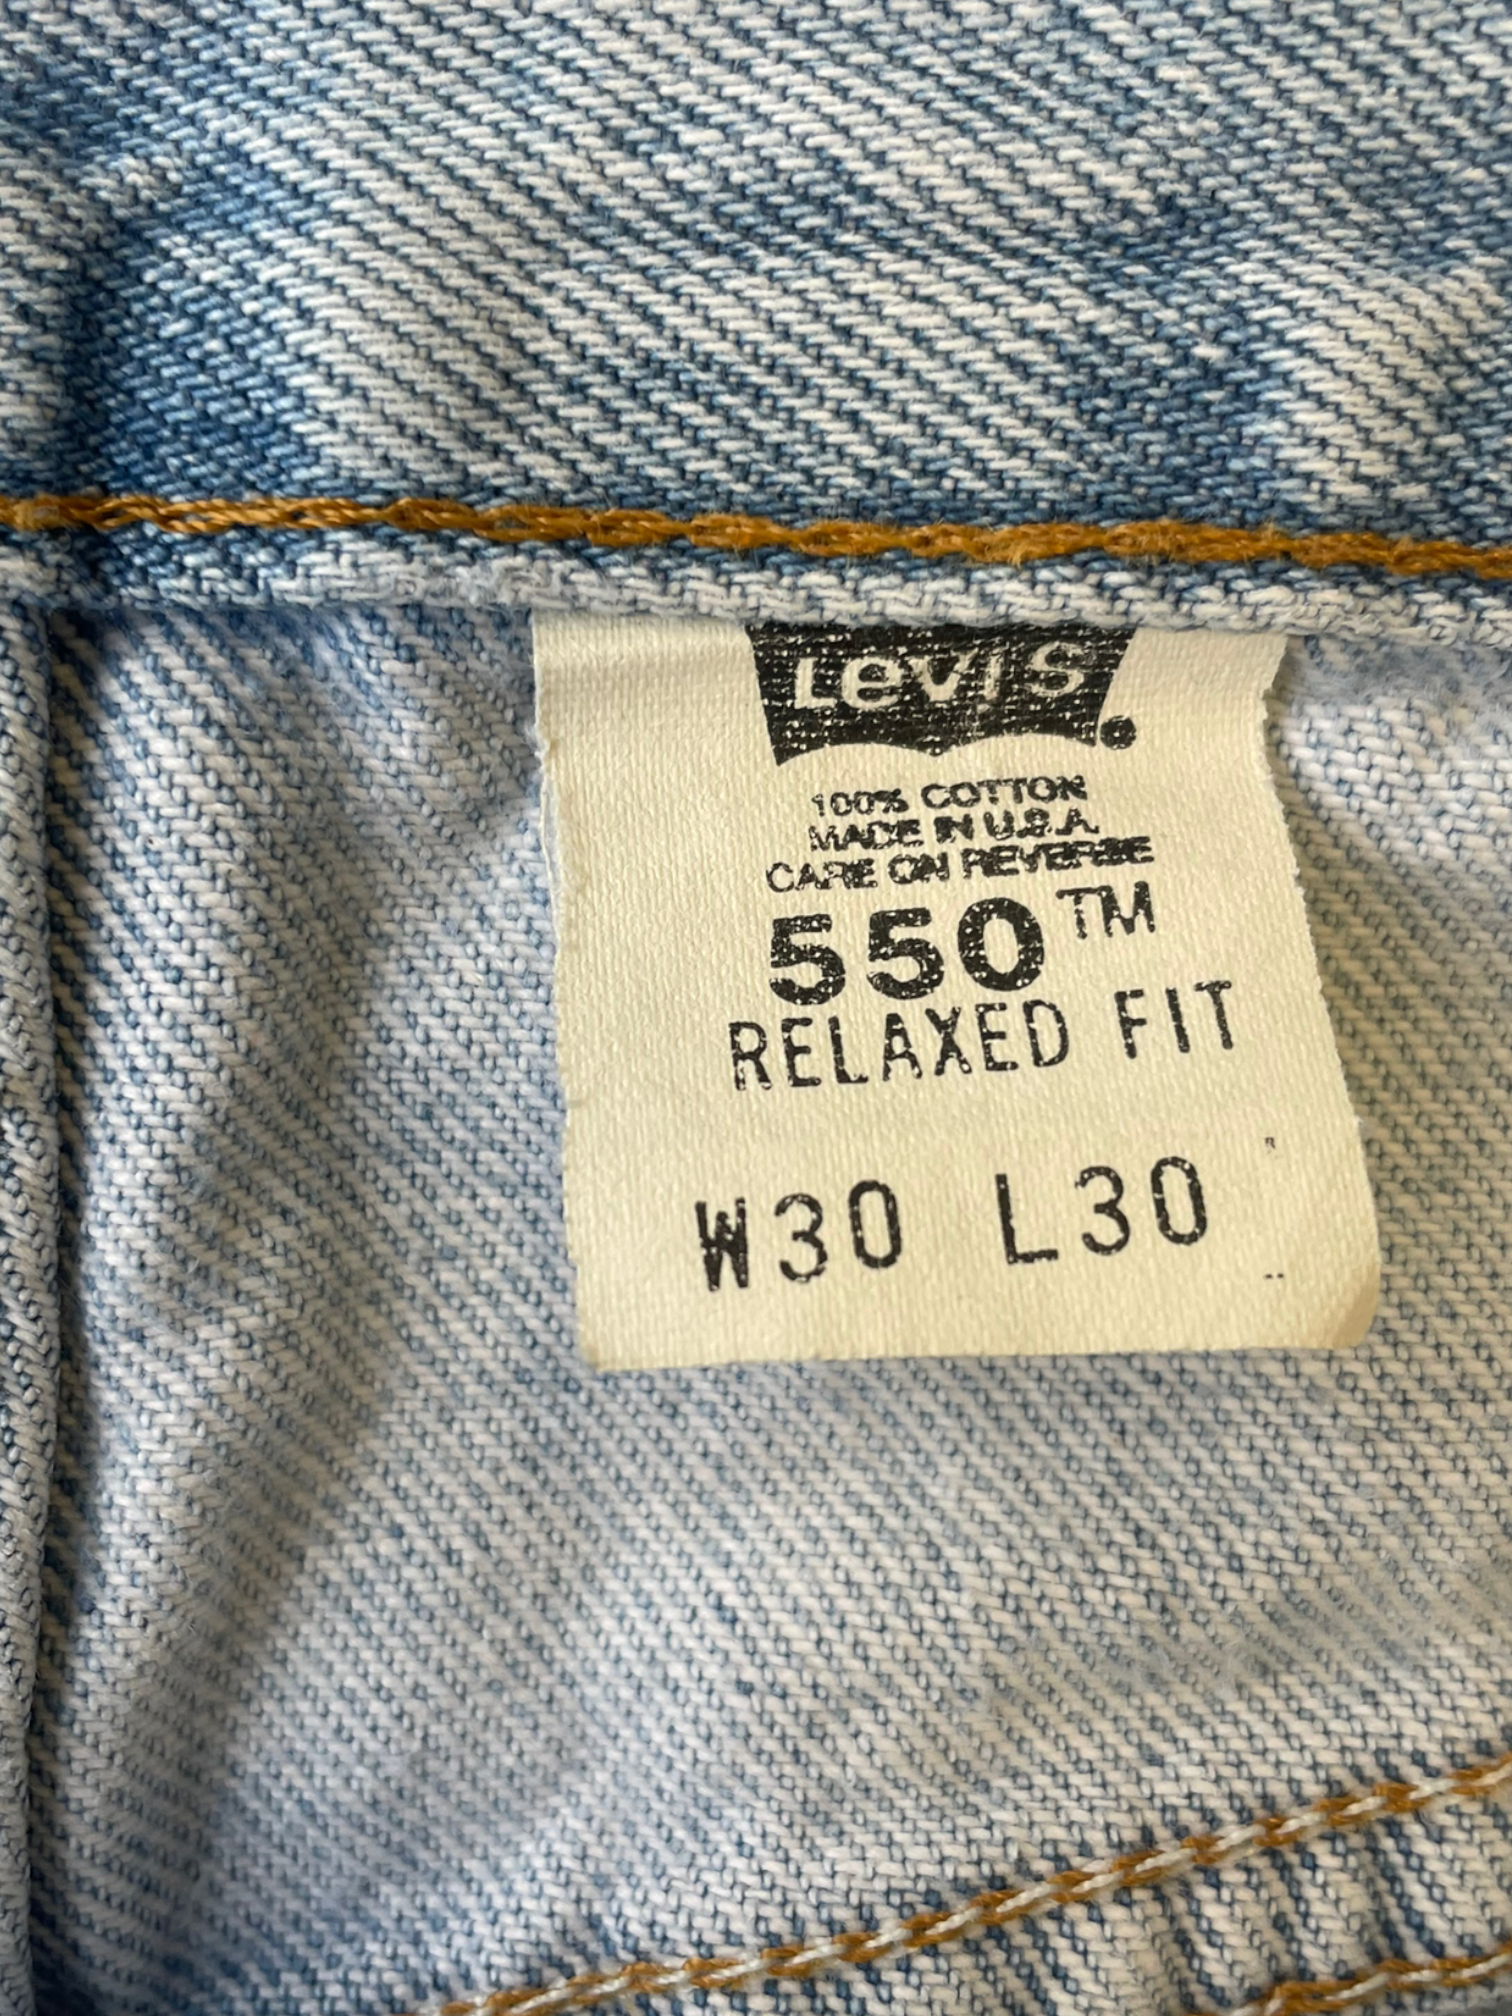 90s Levi 550 Light Wash Jeans - 30x30